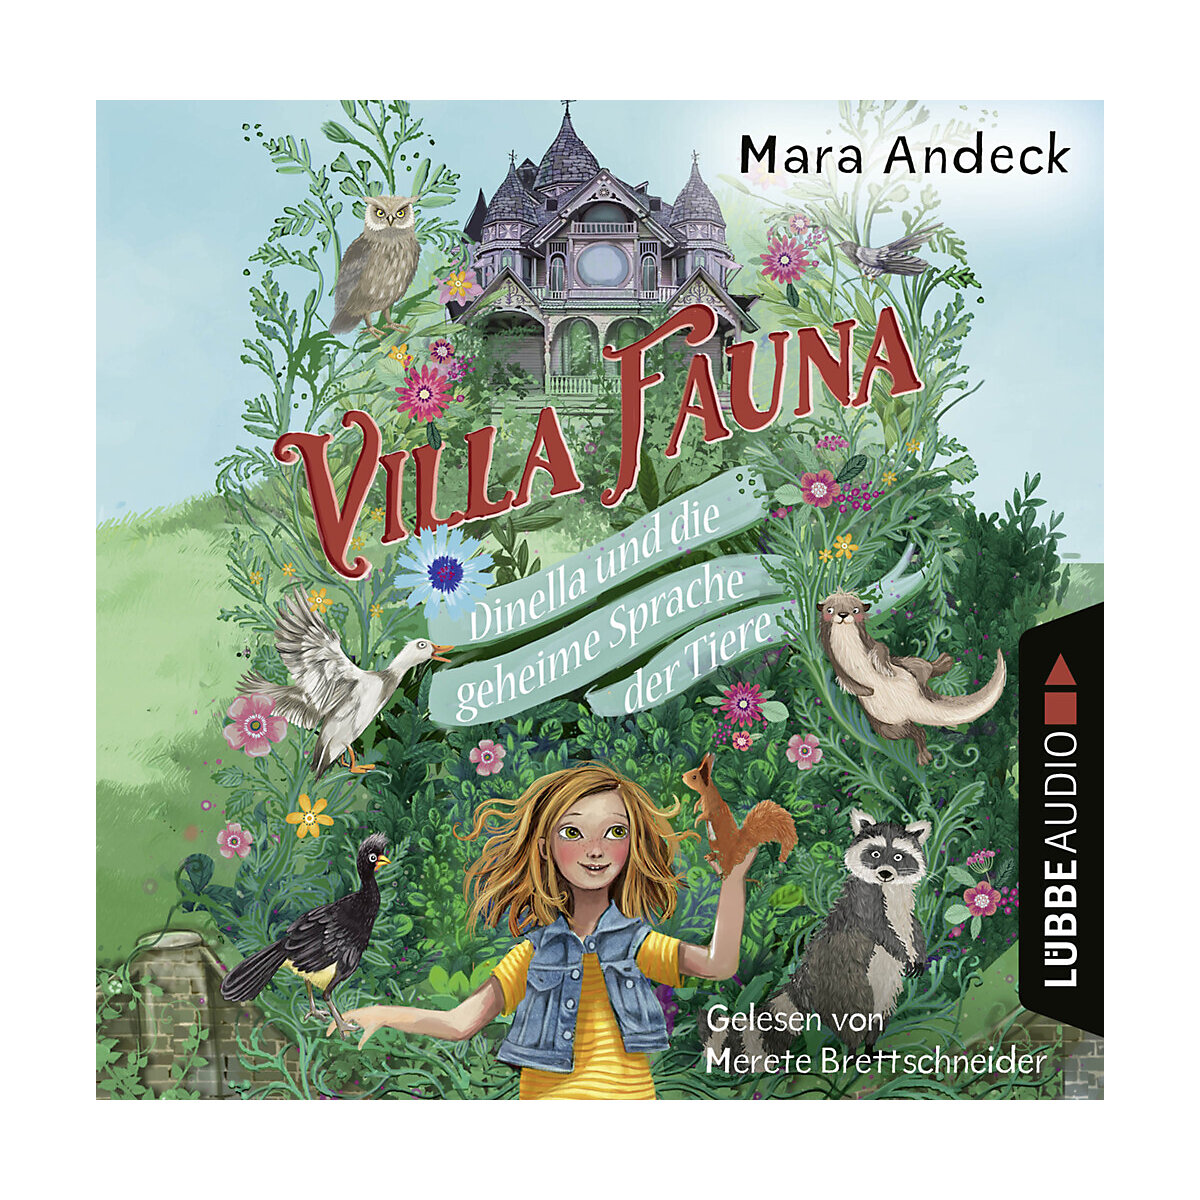 Villa Fauna Dinella und die geheime Sprache der Tiere 2 Audio-CD